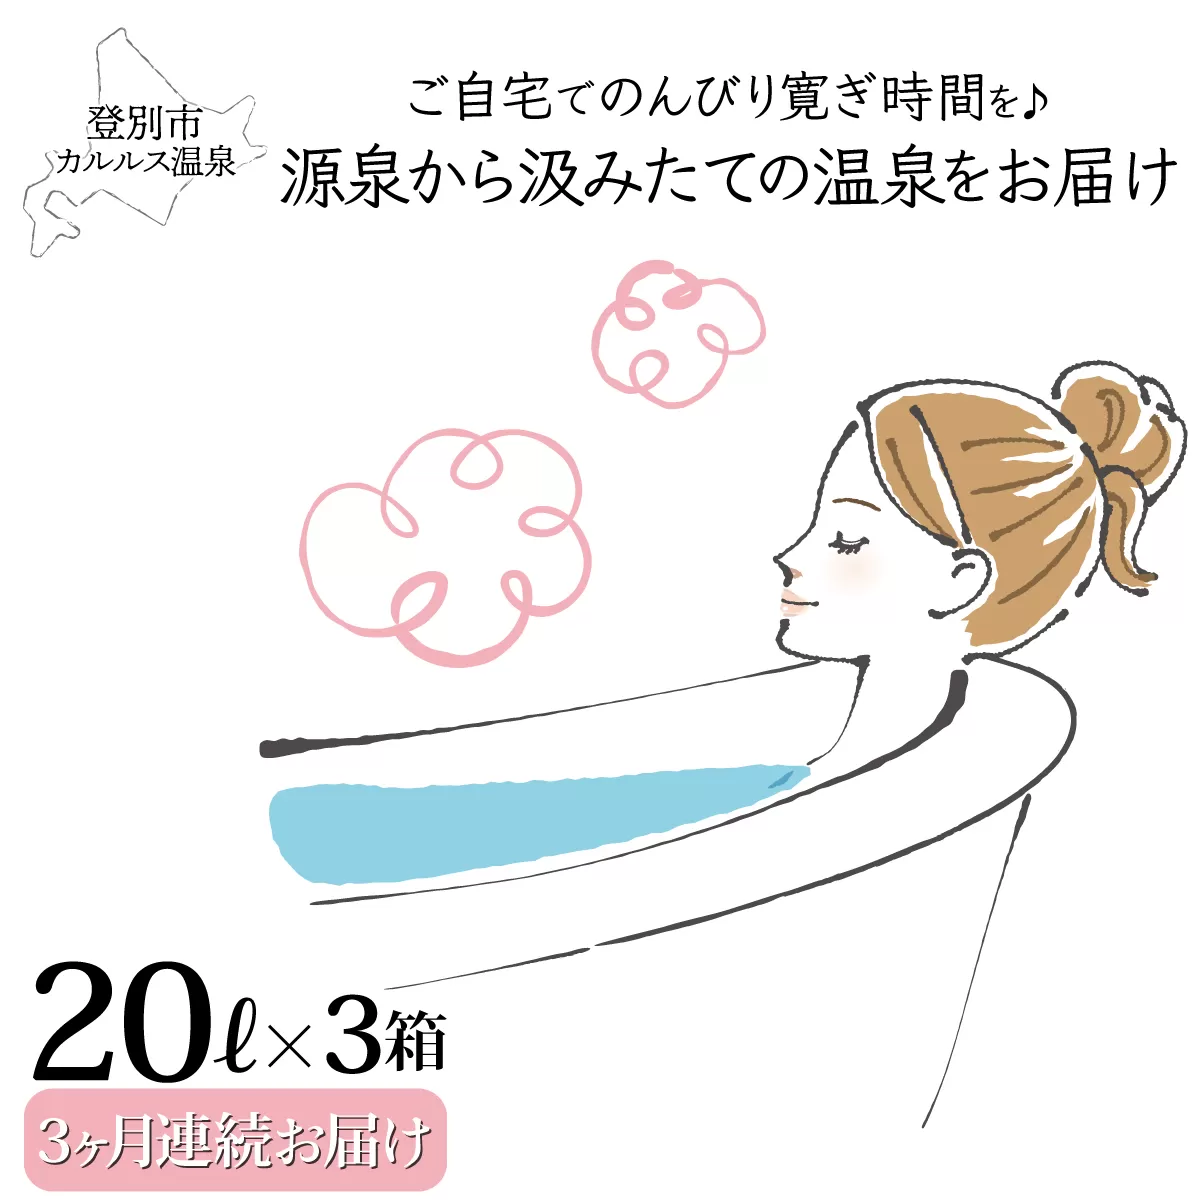 自宅で温泉入浴　登別カルルス温泉20L×3箱【3ヶ月連続お届け】